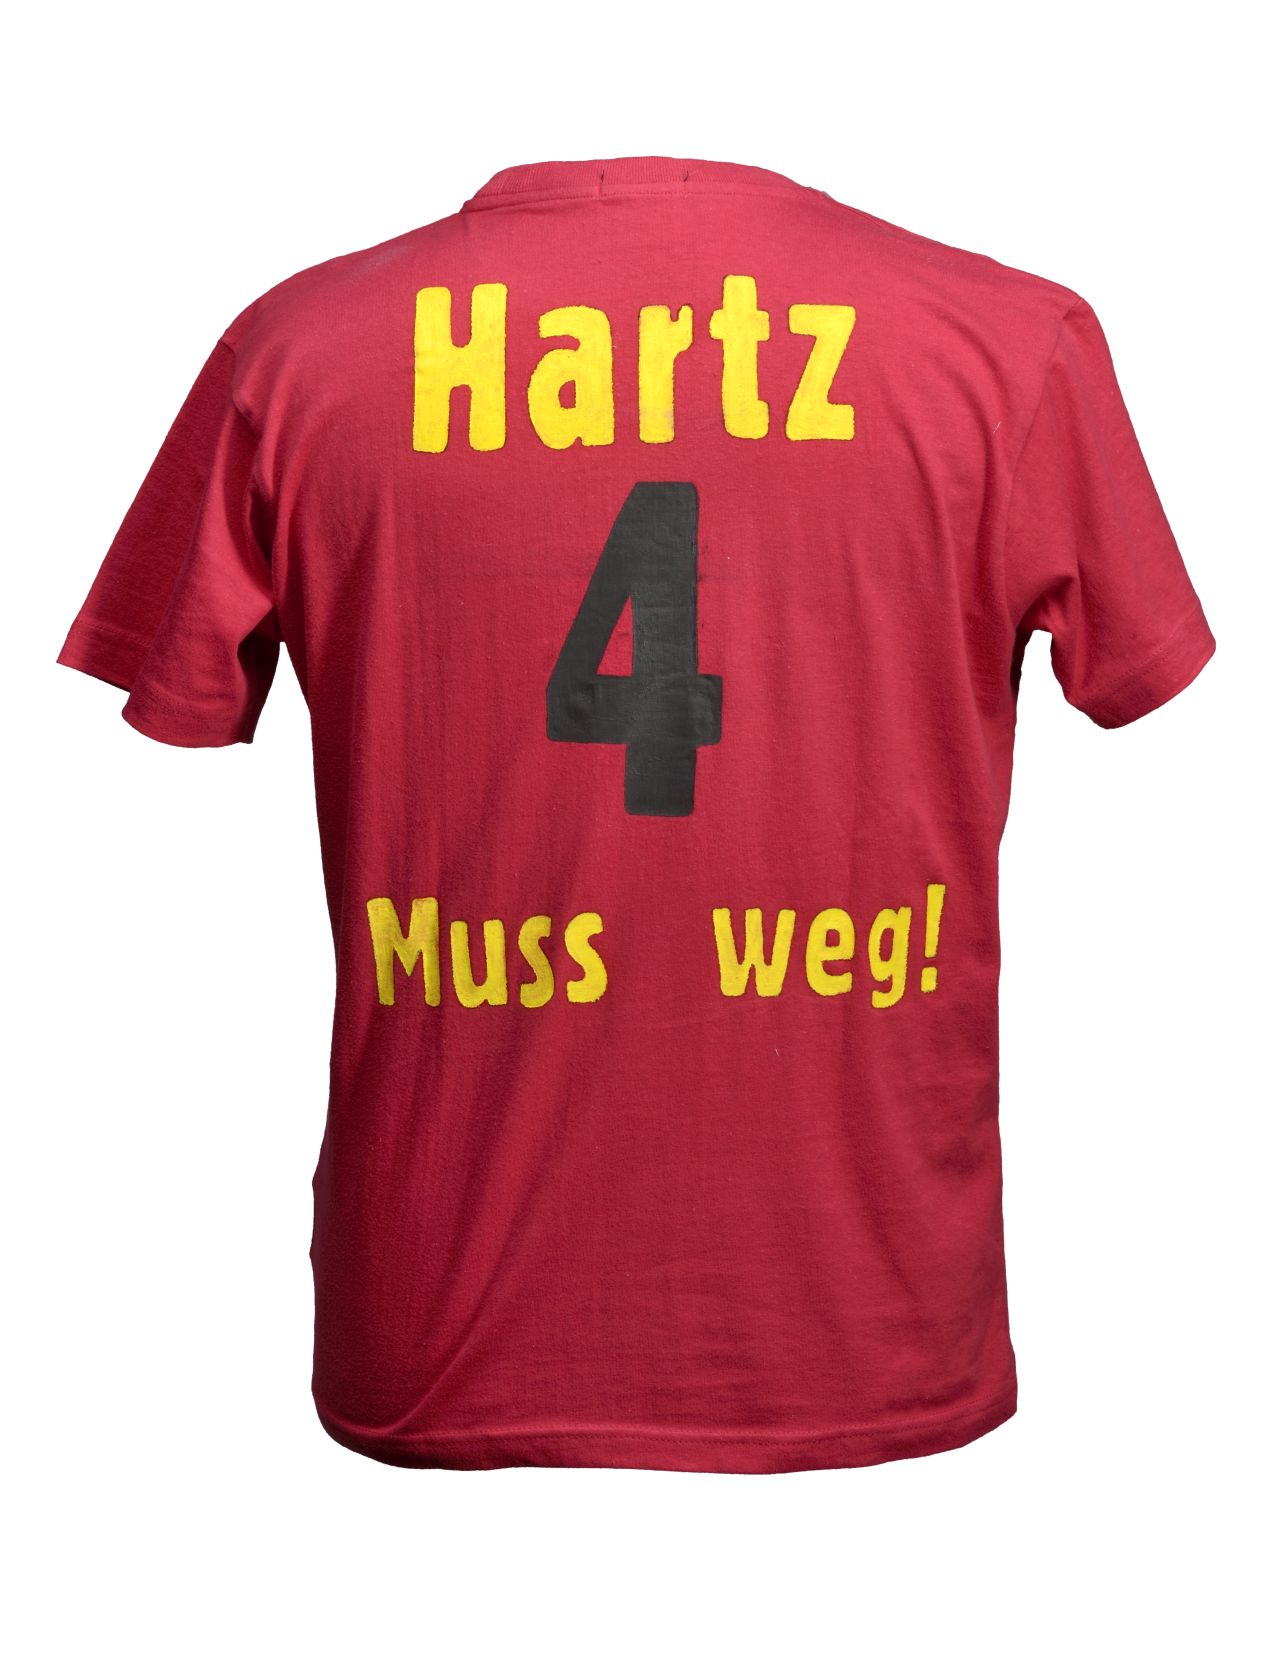 http://www.hdg.de/lemo/img_hd/bestand/objekte/globalisierung/t-shirt-hartz-4-muss-weg_textil_2008-07-0126RS.jpg